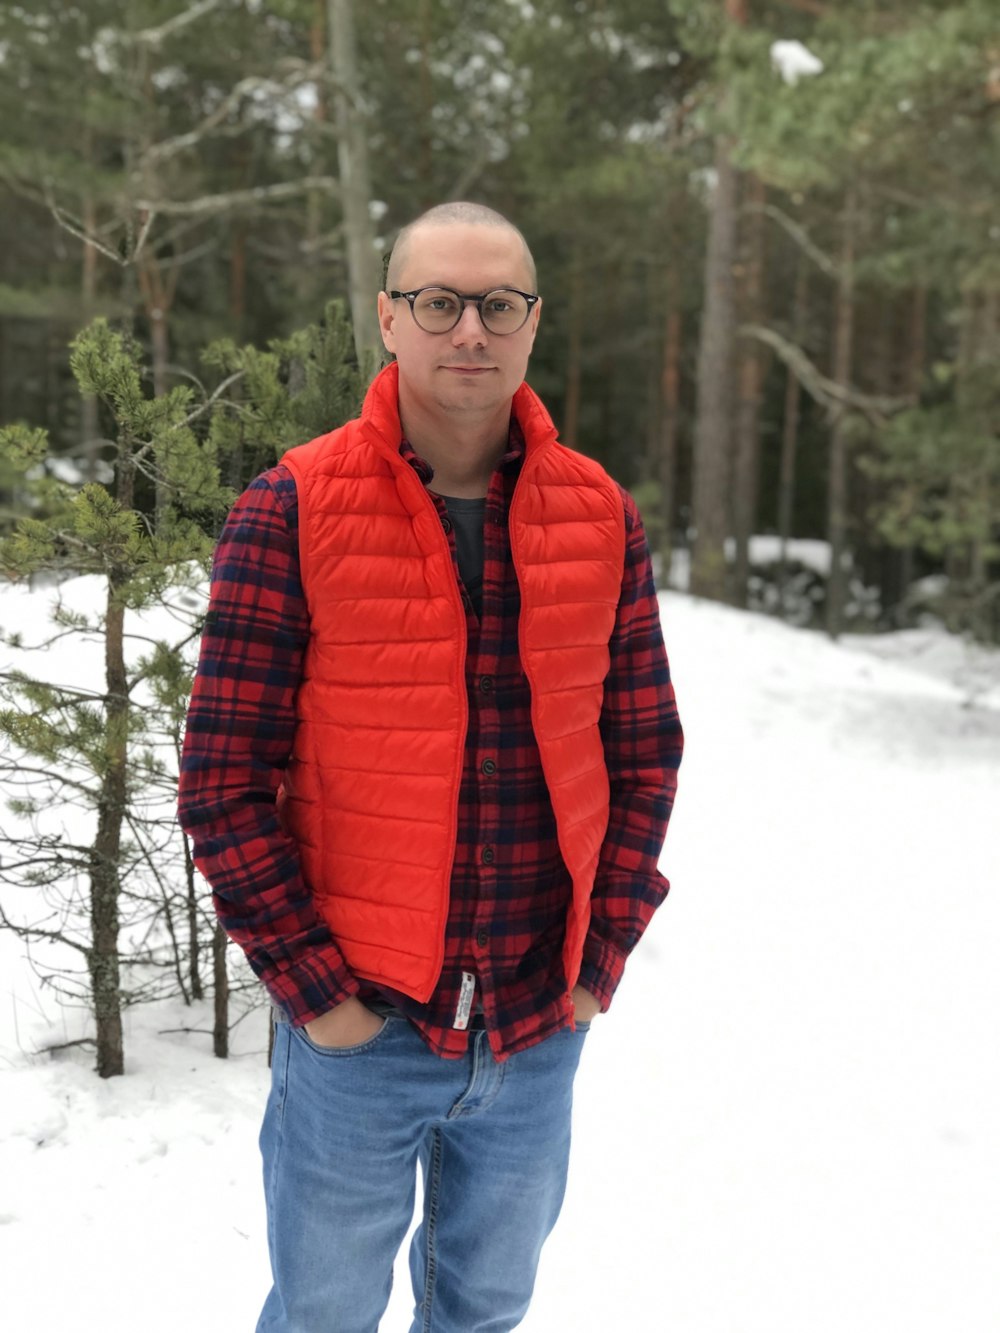 Un uomo in piedi nella neve che indossa un giubbotto rosso